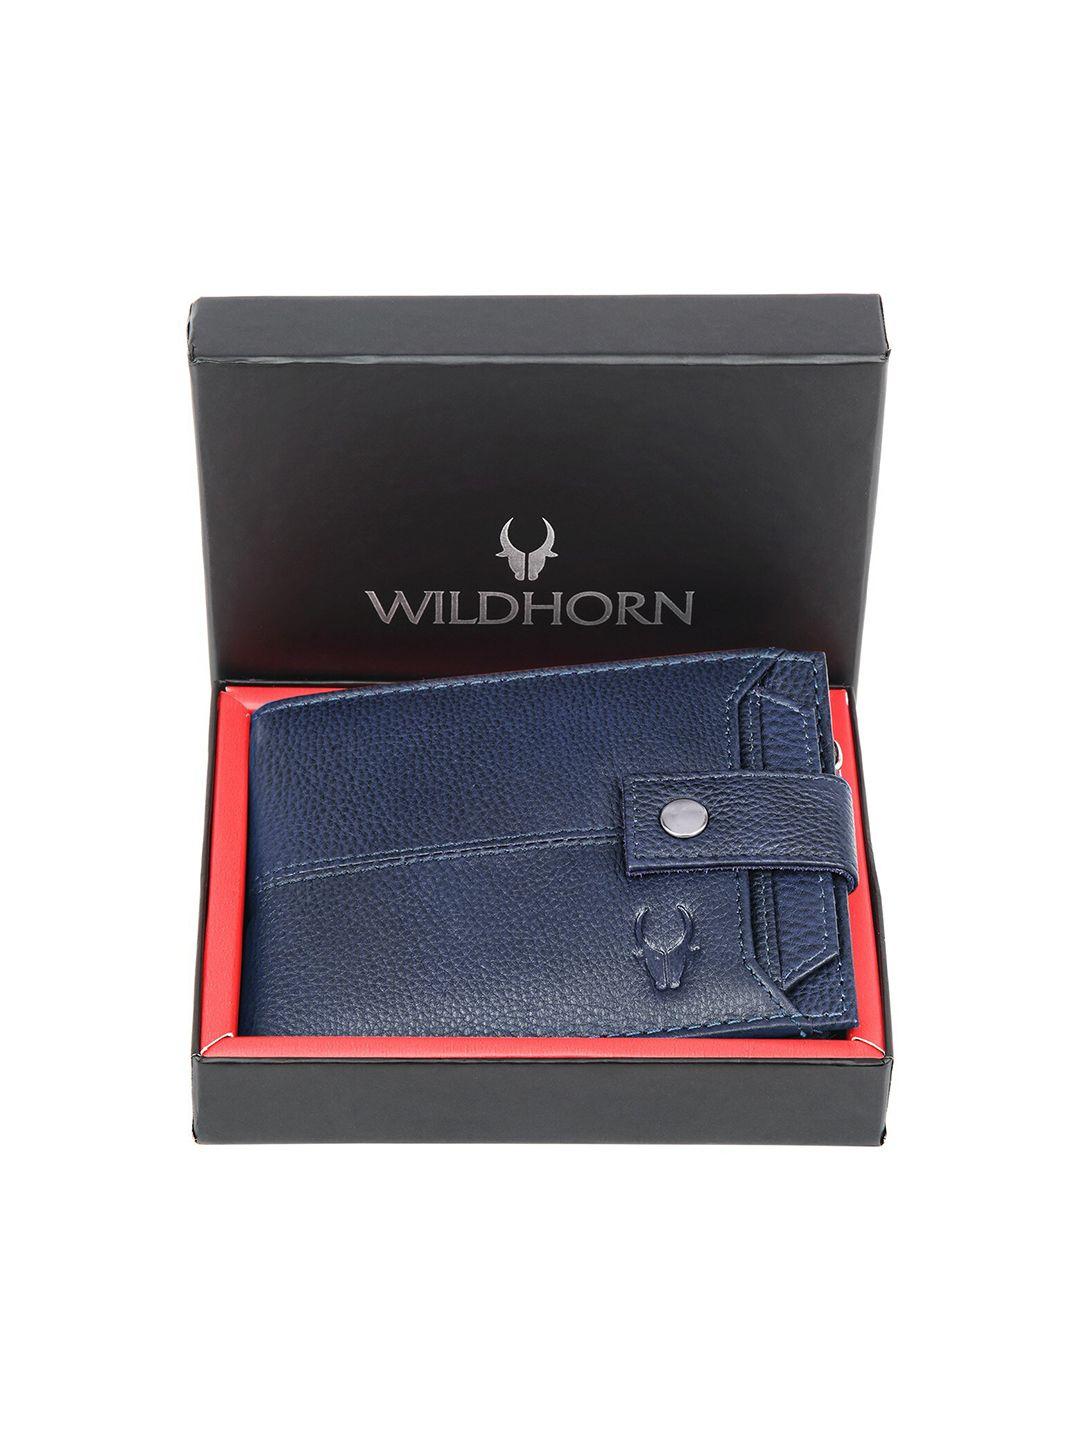 wildhorn men blue leather two fold wallet